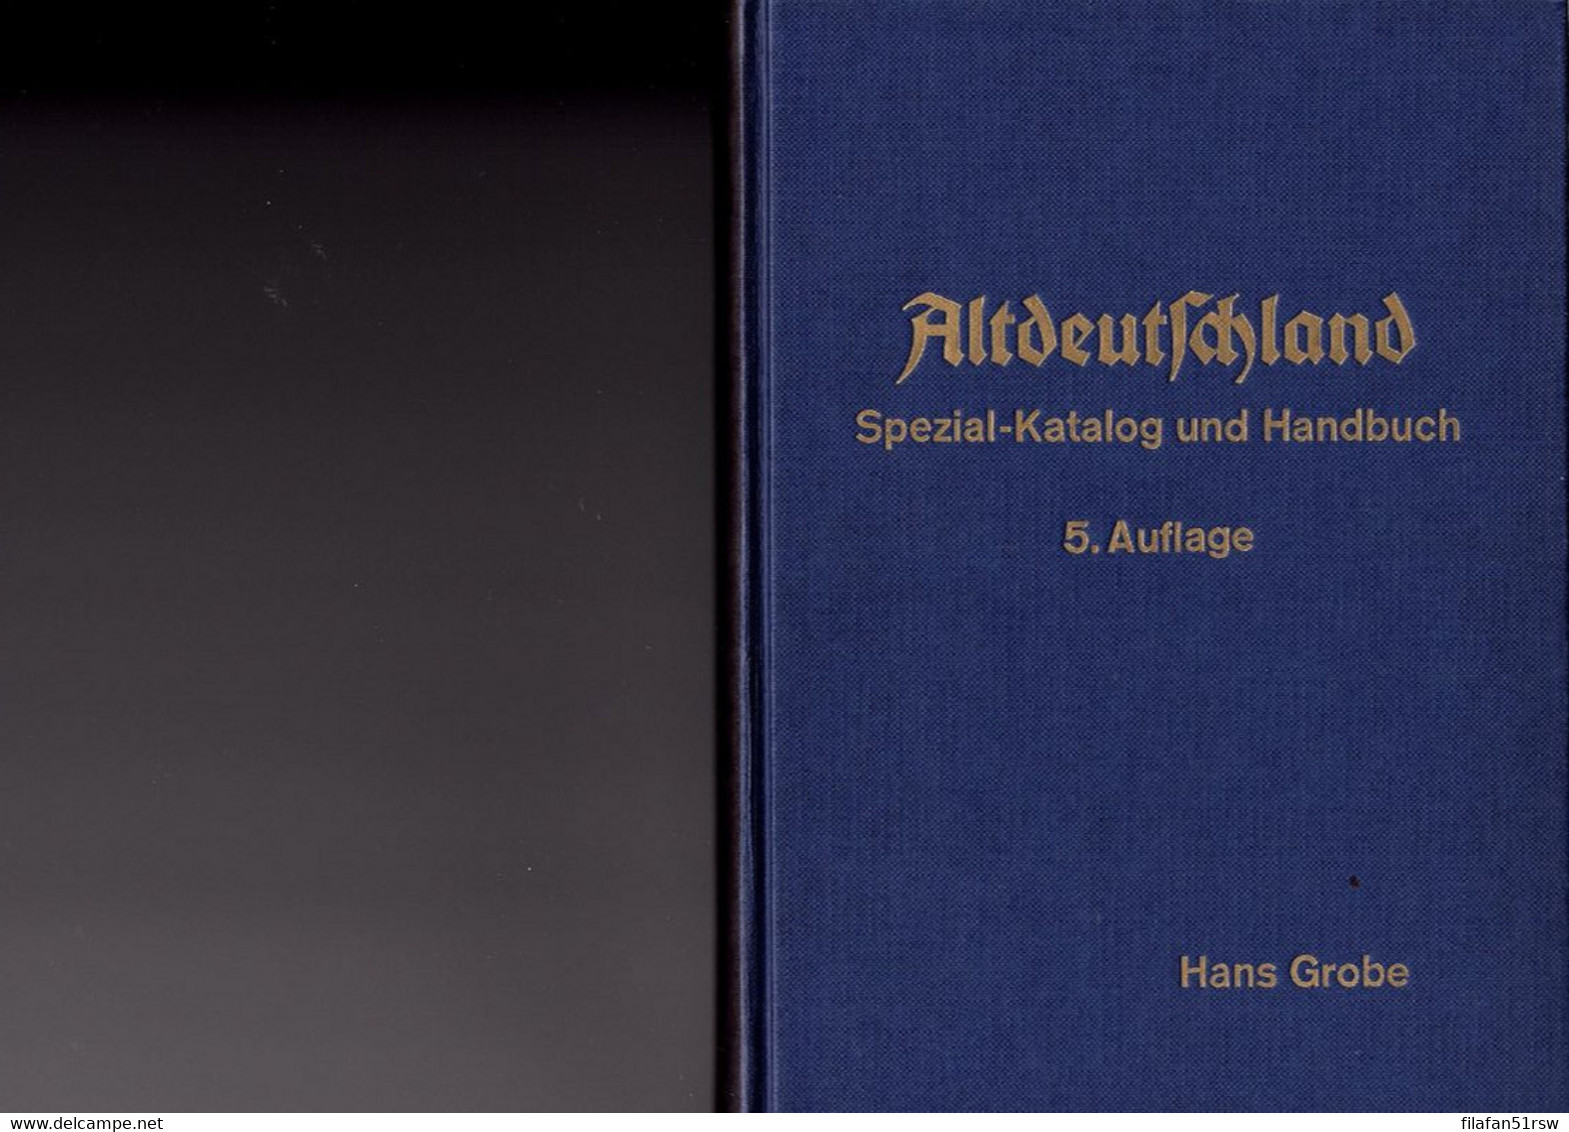 Grobe Altdeutschland Spezial-Katalog Und Handbuch 5. Auflage, Hans Grobe Und Theodor Oppermann Hannover - Handbooks